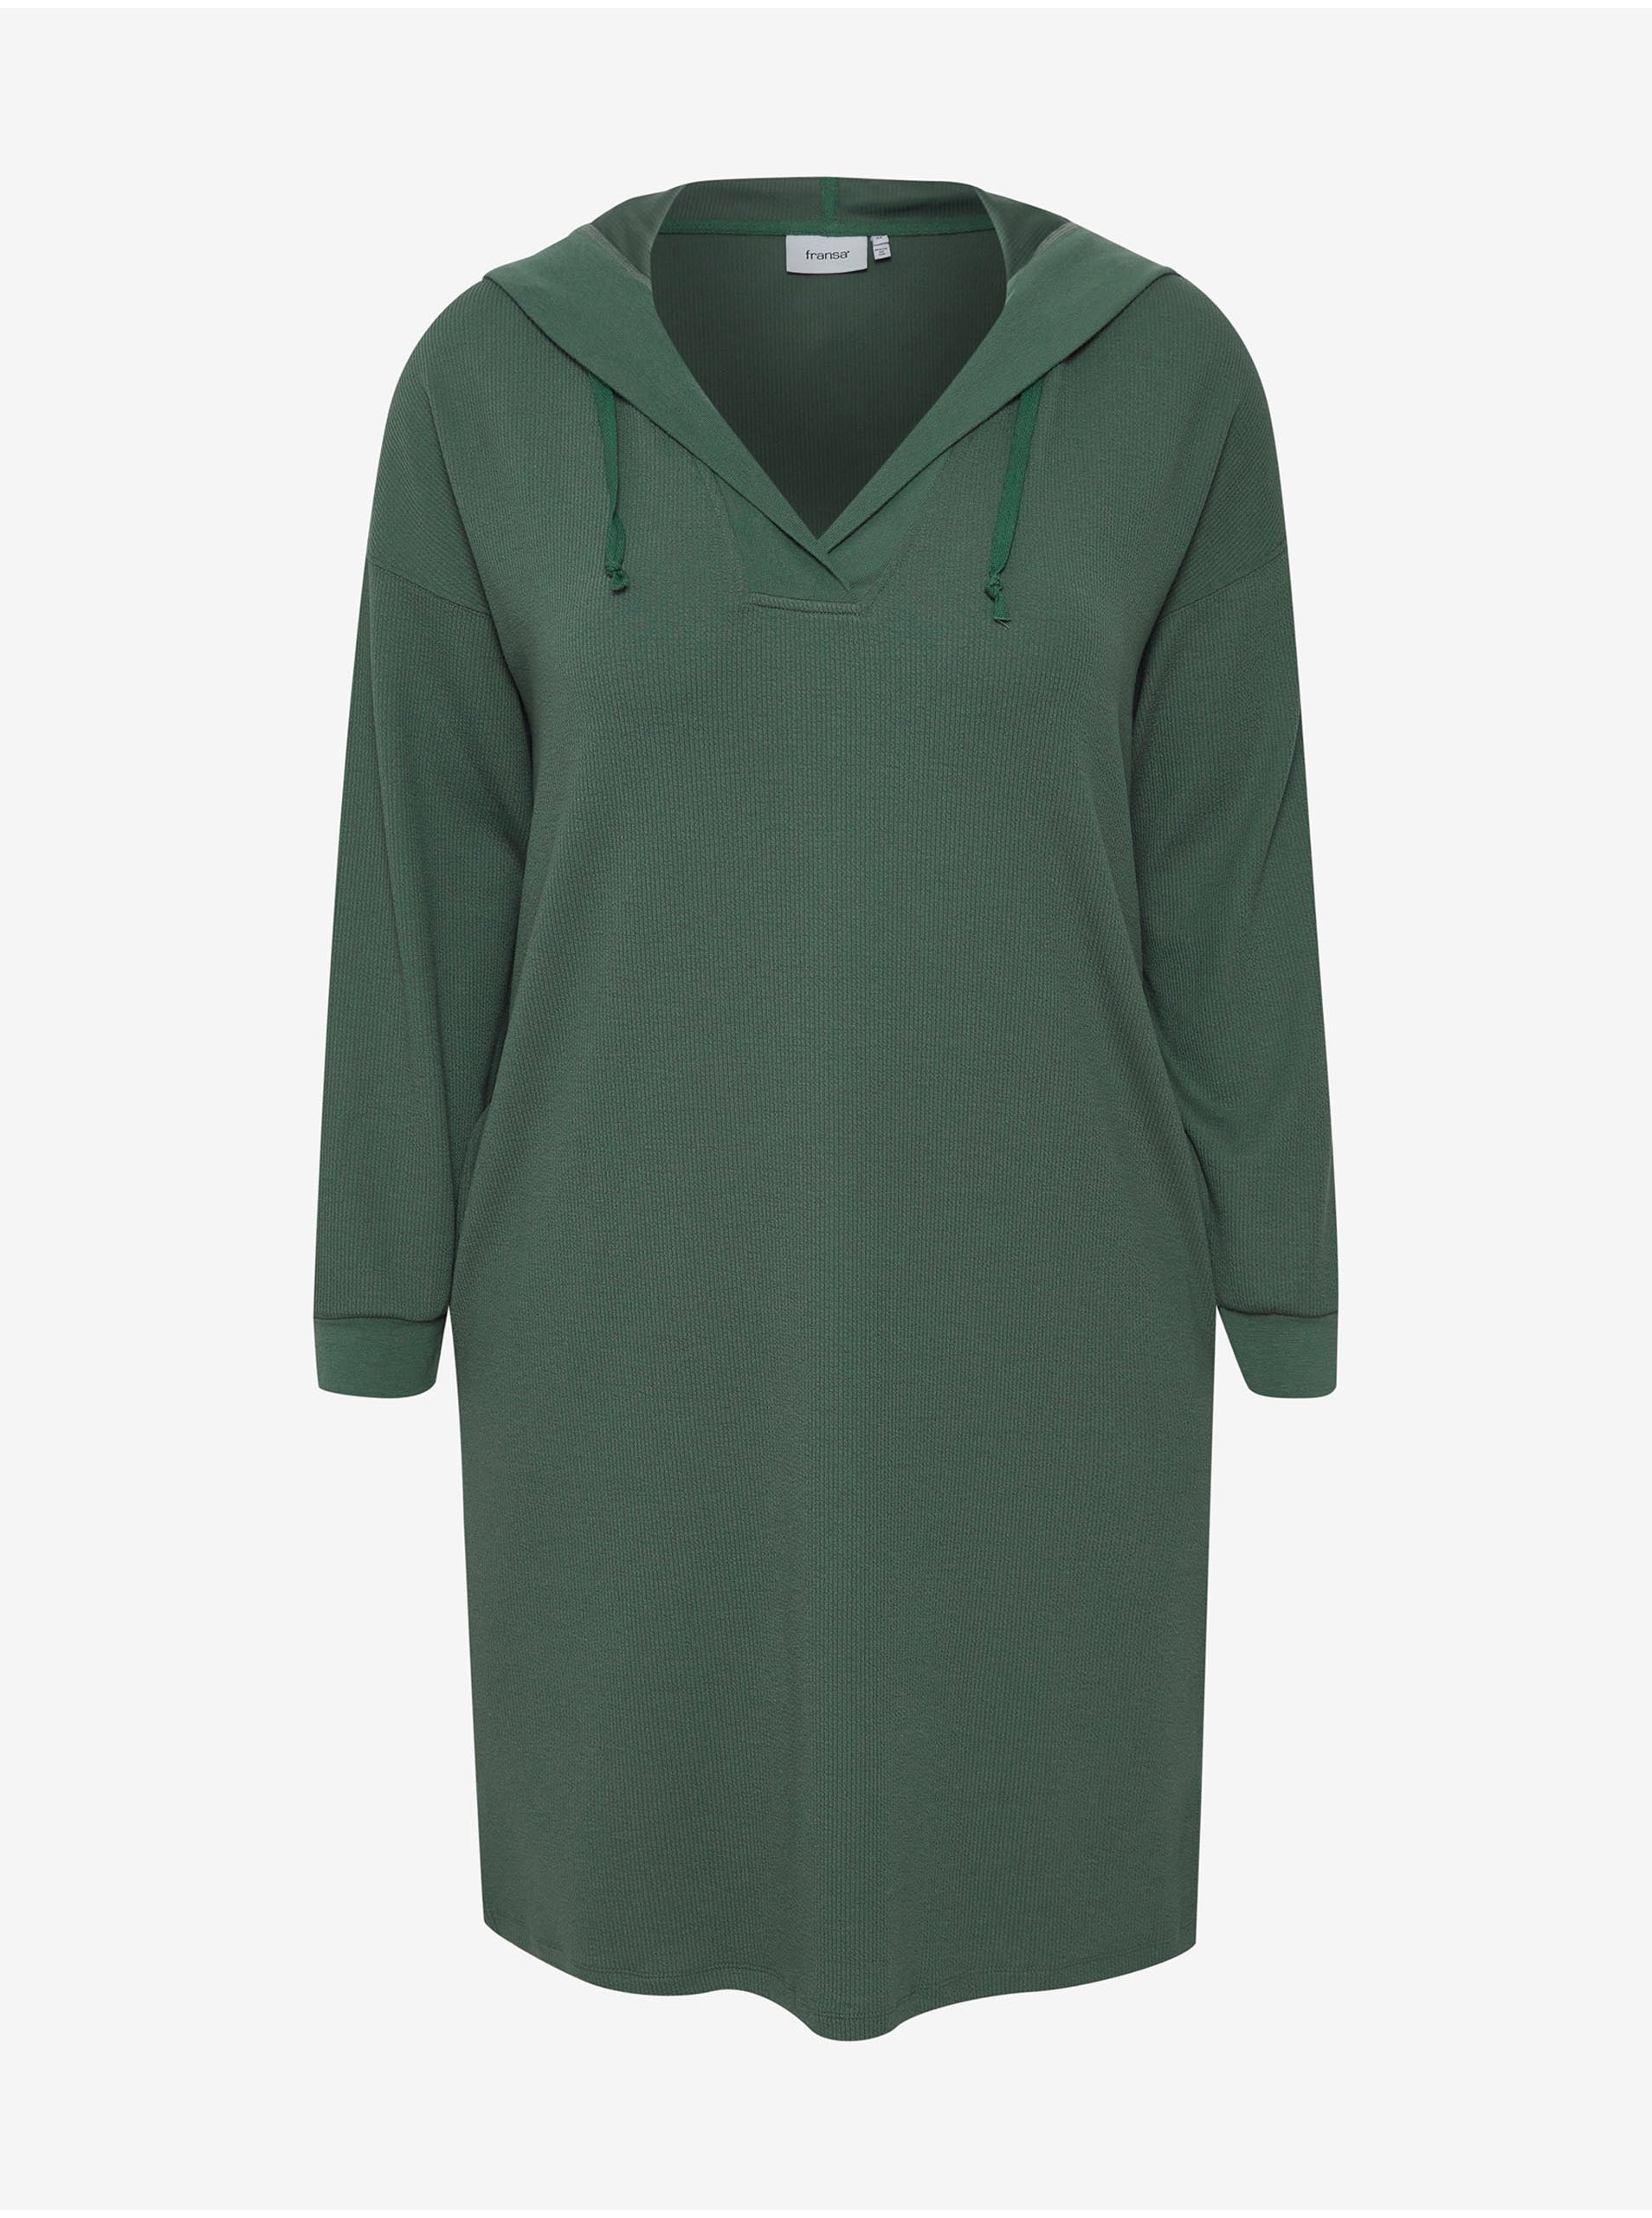 Zelené mikinové šaty s kapucí Fransa